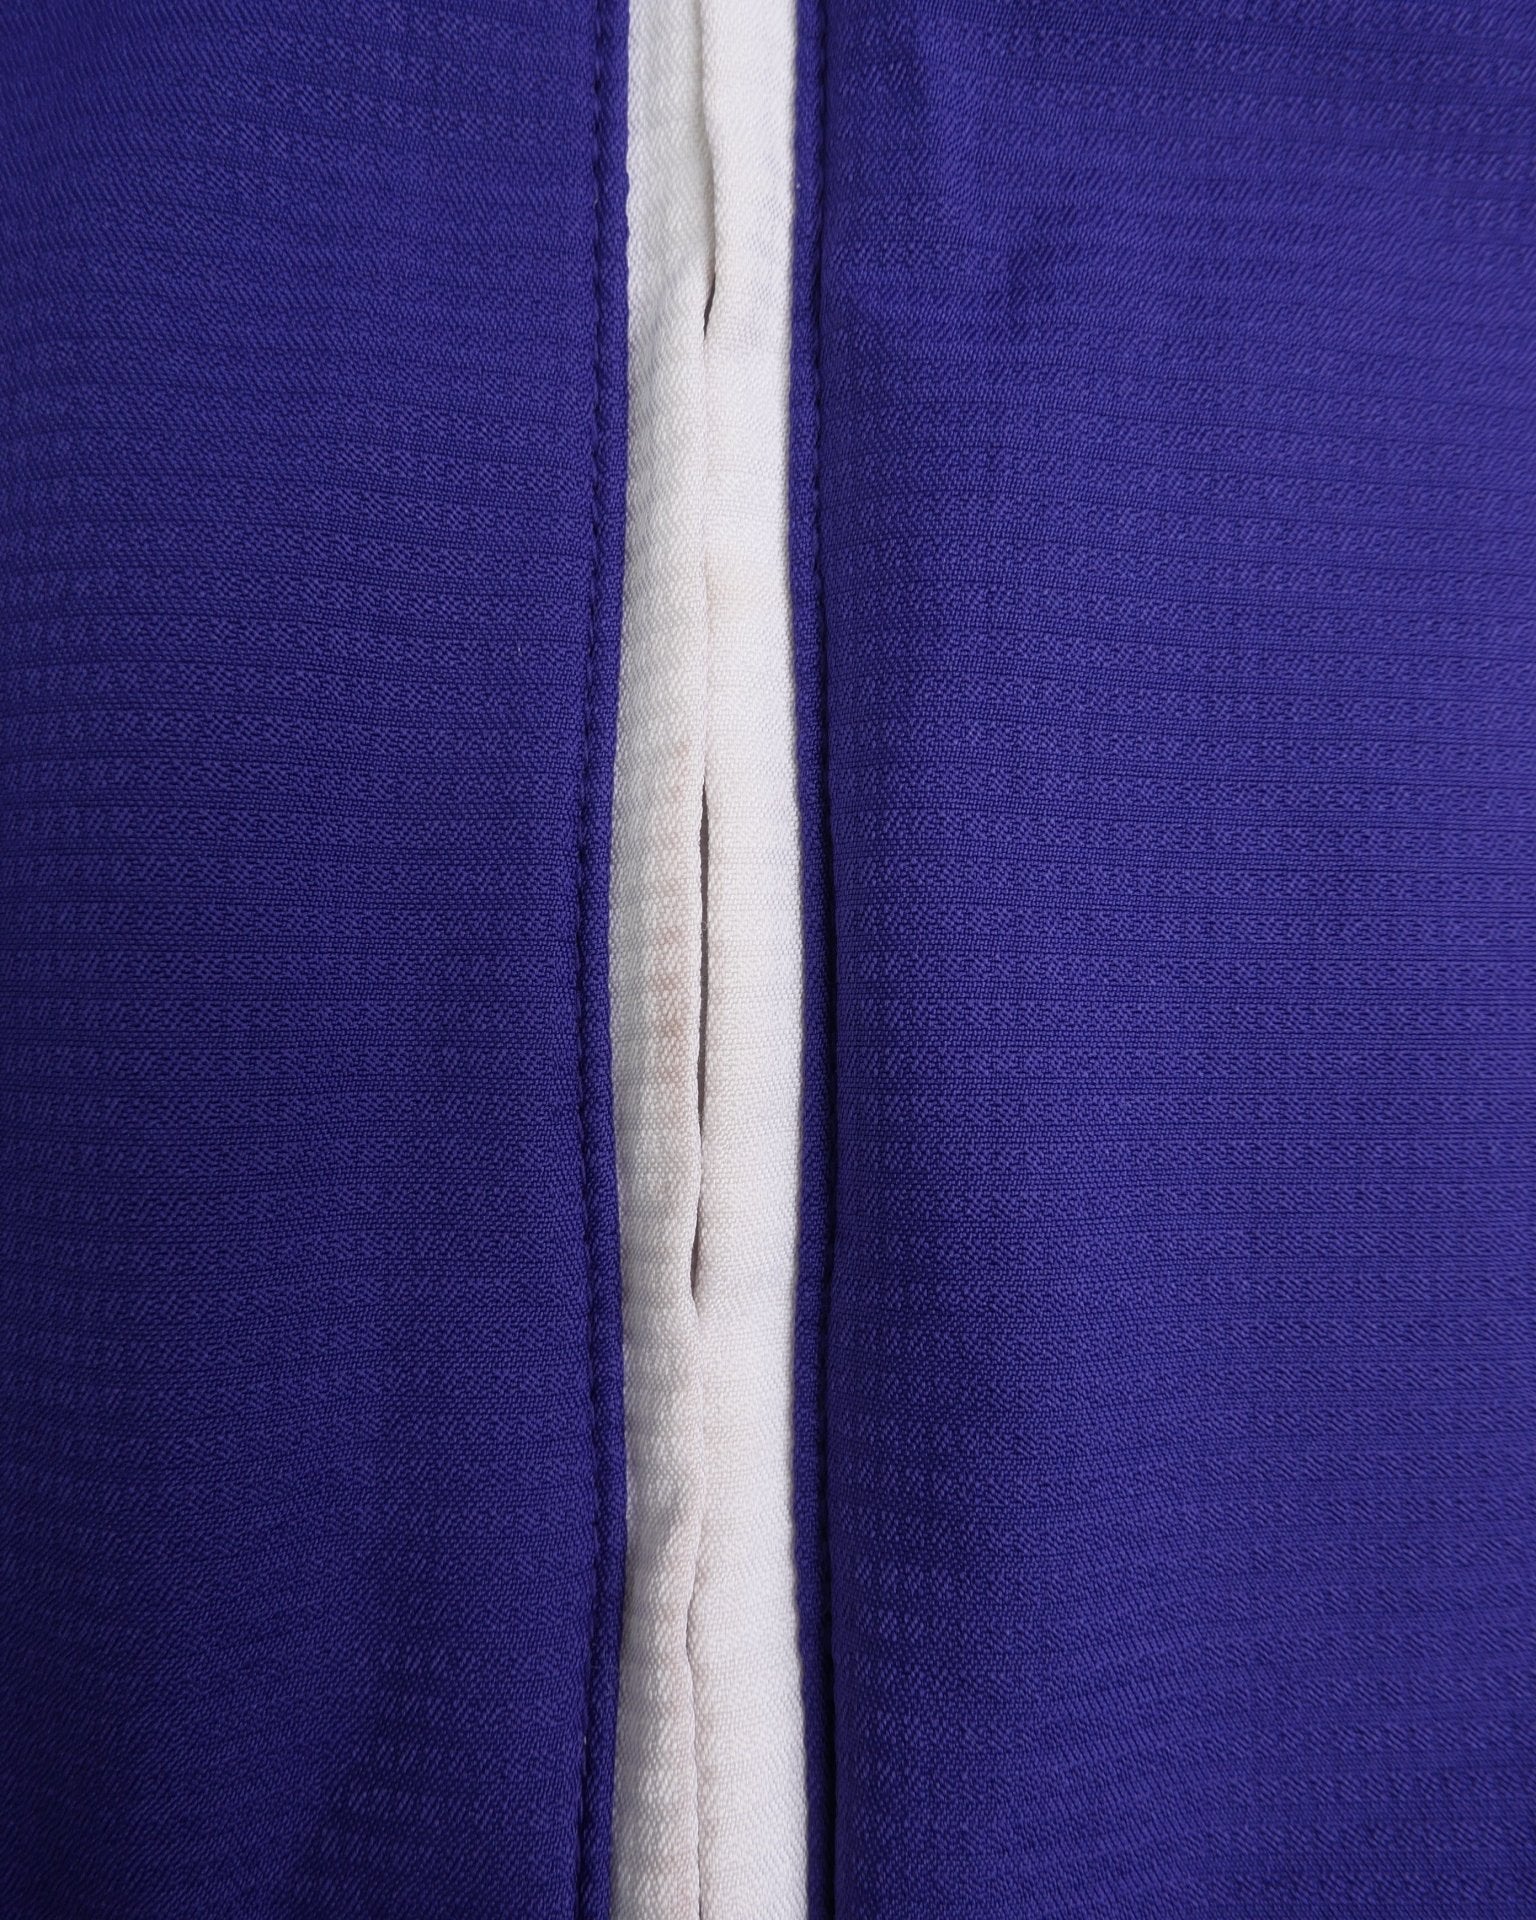 Adidas embroidered Logo 'Stonehill Seahawks' purple Track Jacket - Peeces